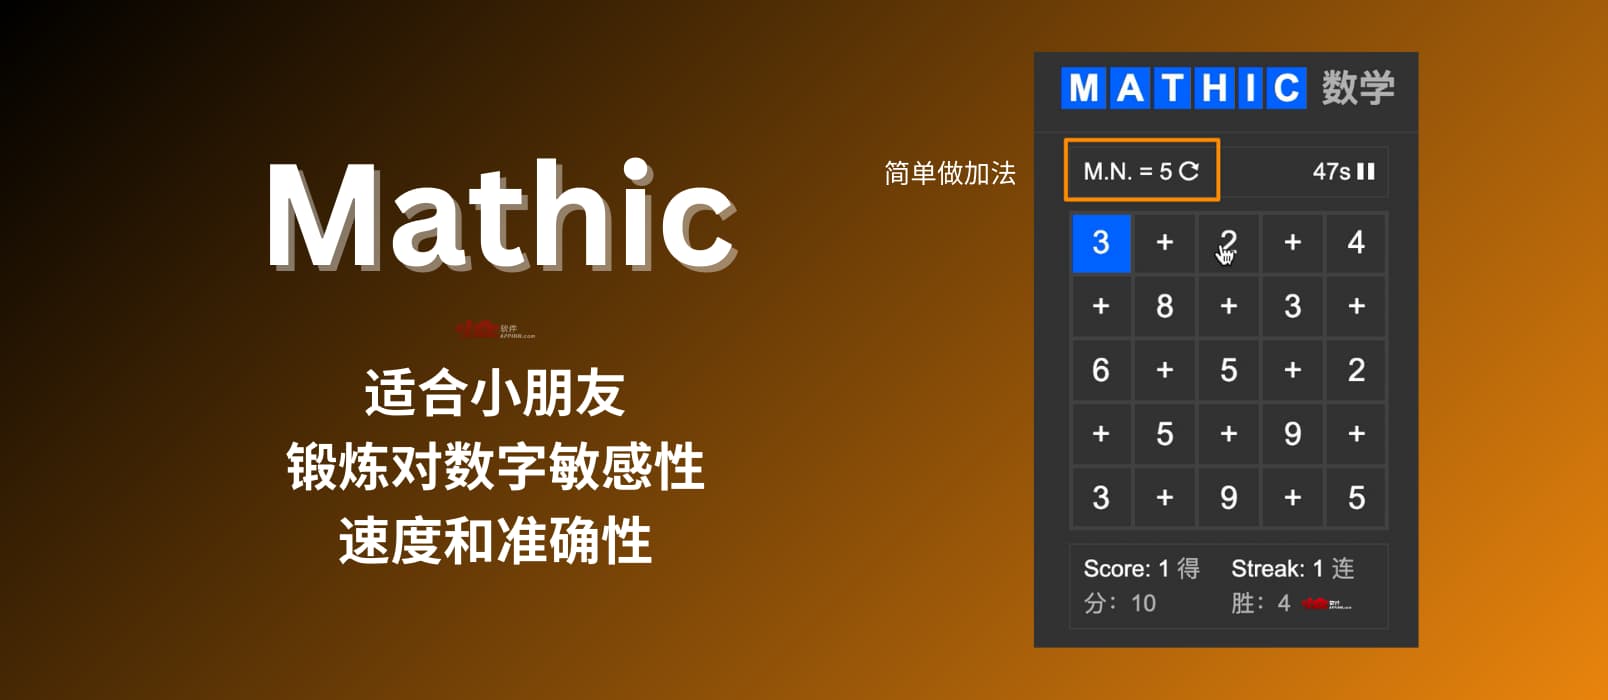 Mathic - 一个适合小朋友，简单的、摸鱼小网站：锻炼你对数字敏感性、速度和准确性